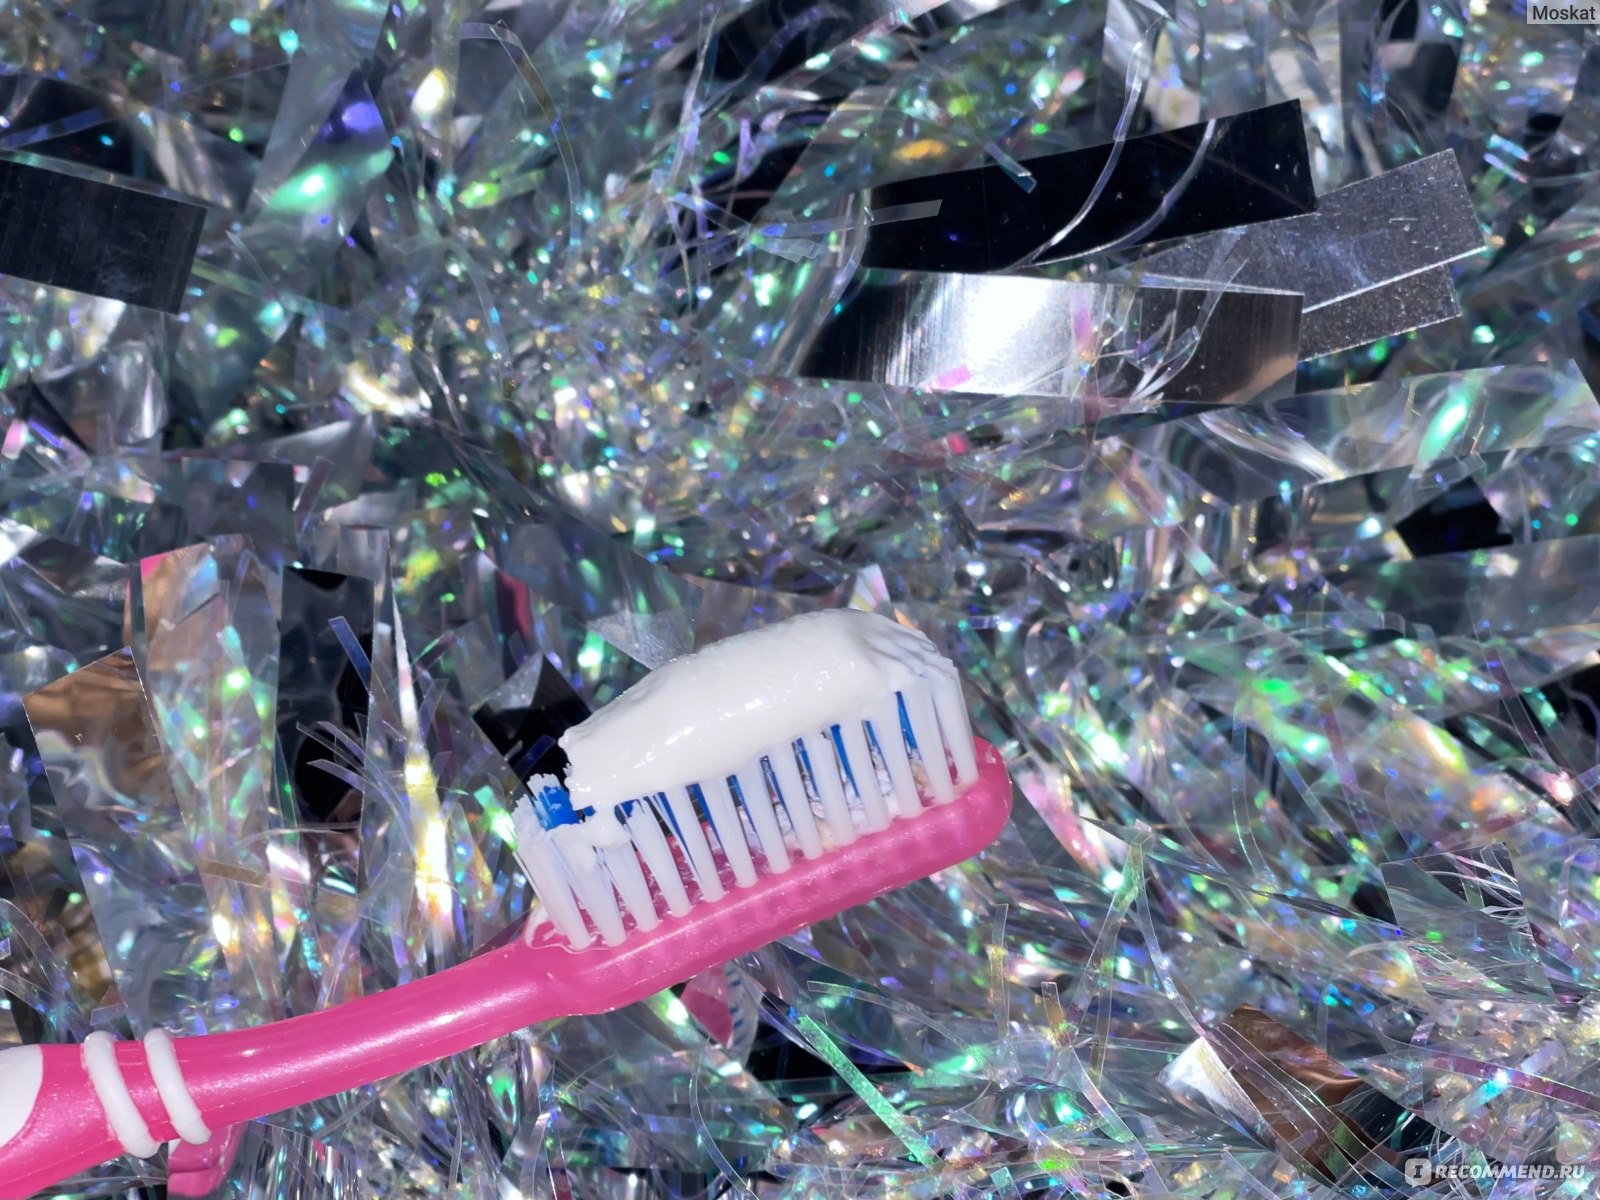 Зубная паста SPLAT "Ультракомплекс" фото